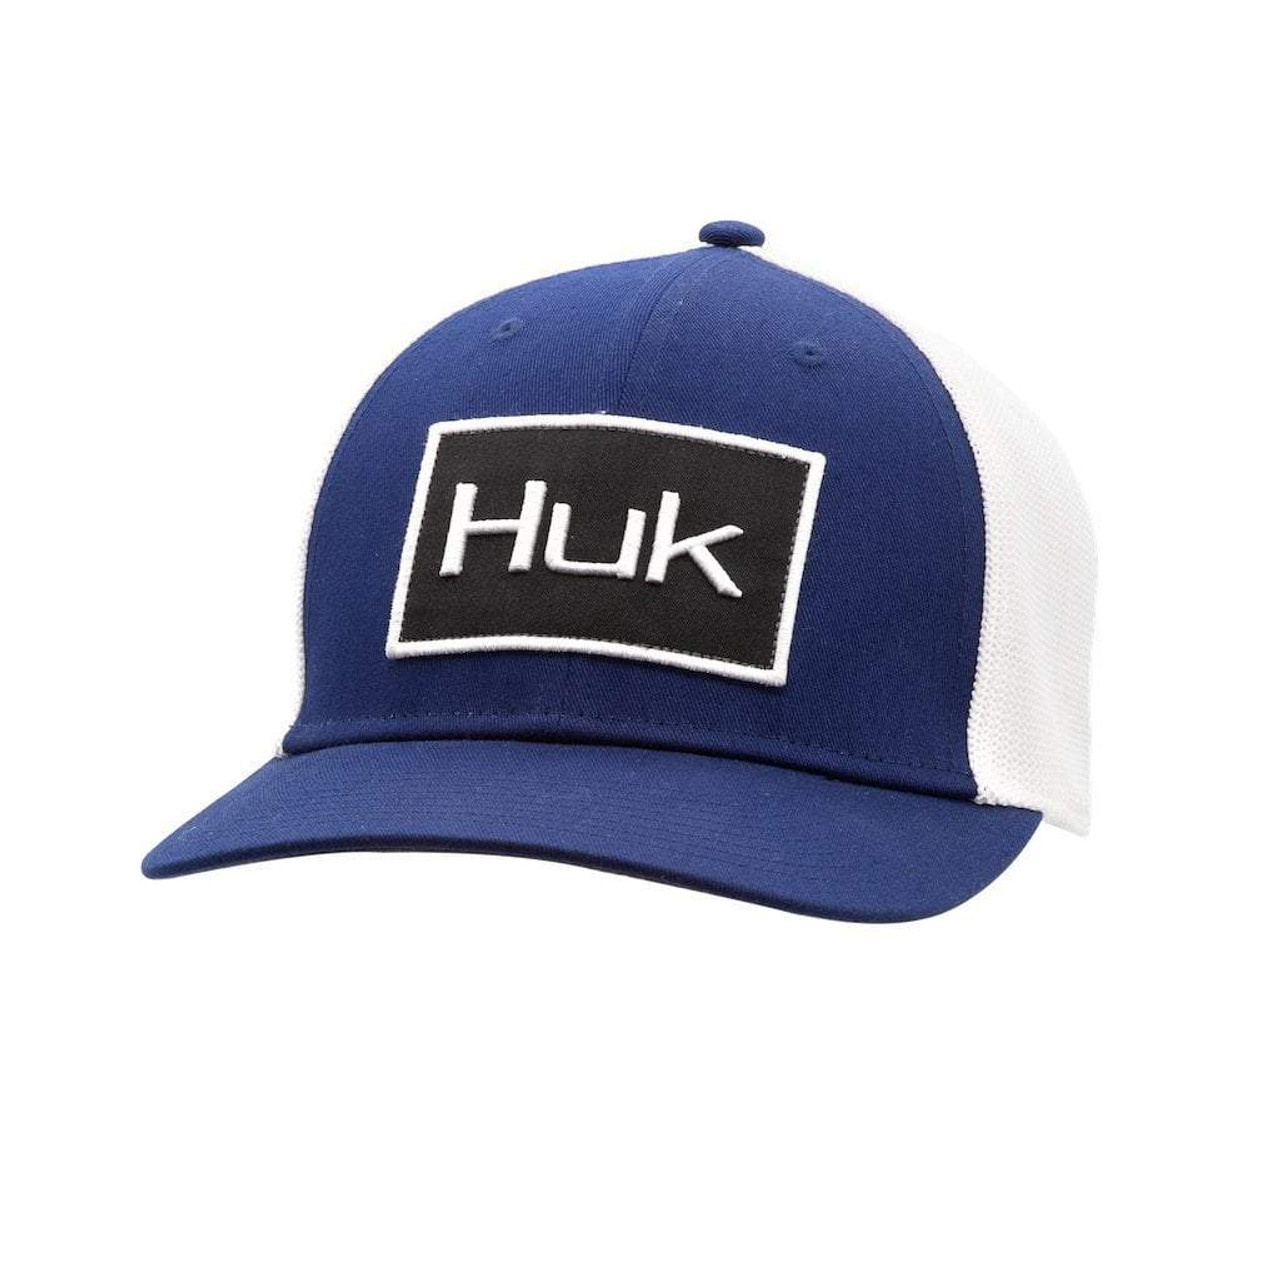 Huk Fishing Angler Sport Trucker Hat, Navy/White - H3000184-410-1